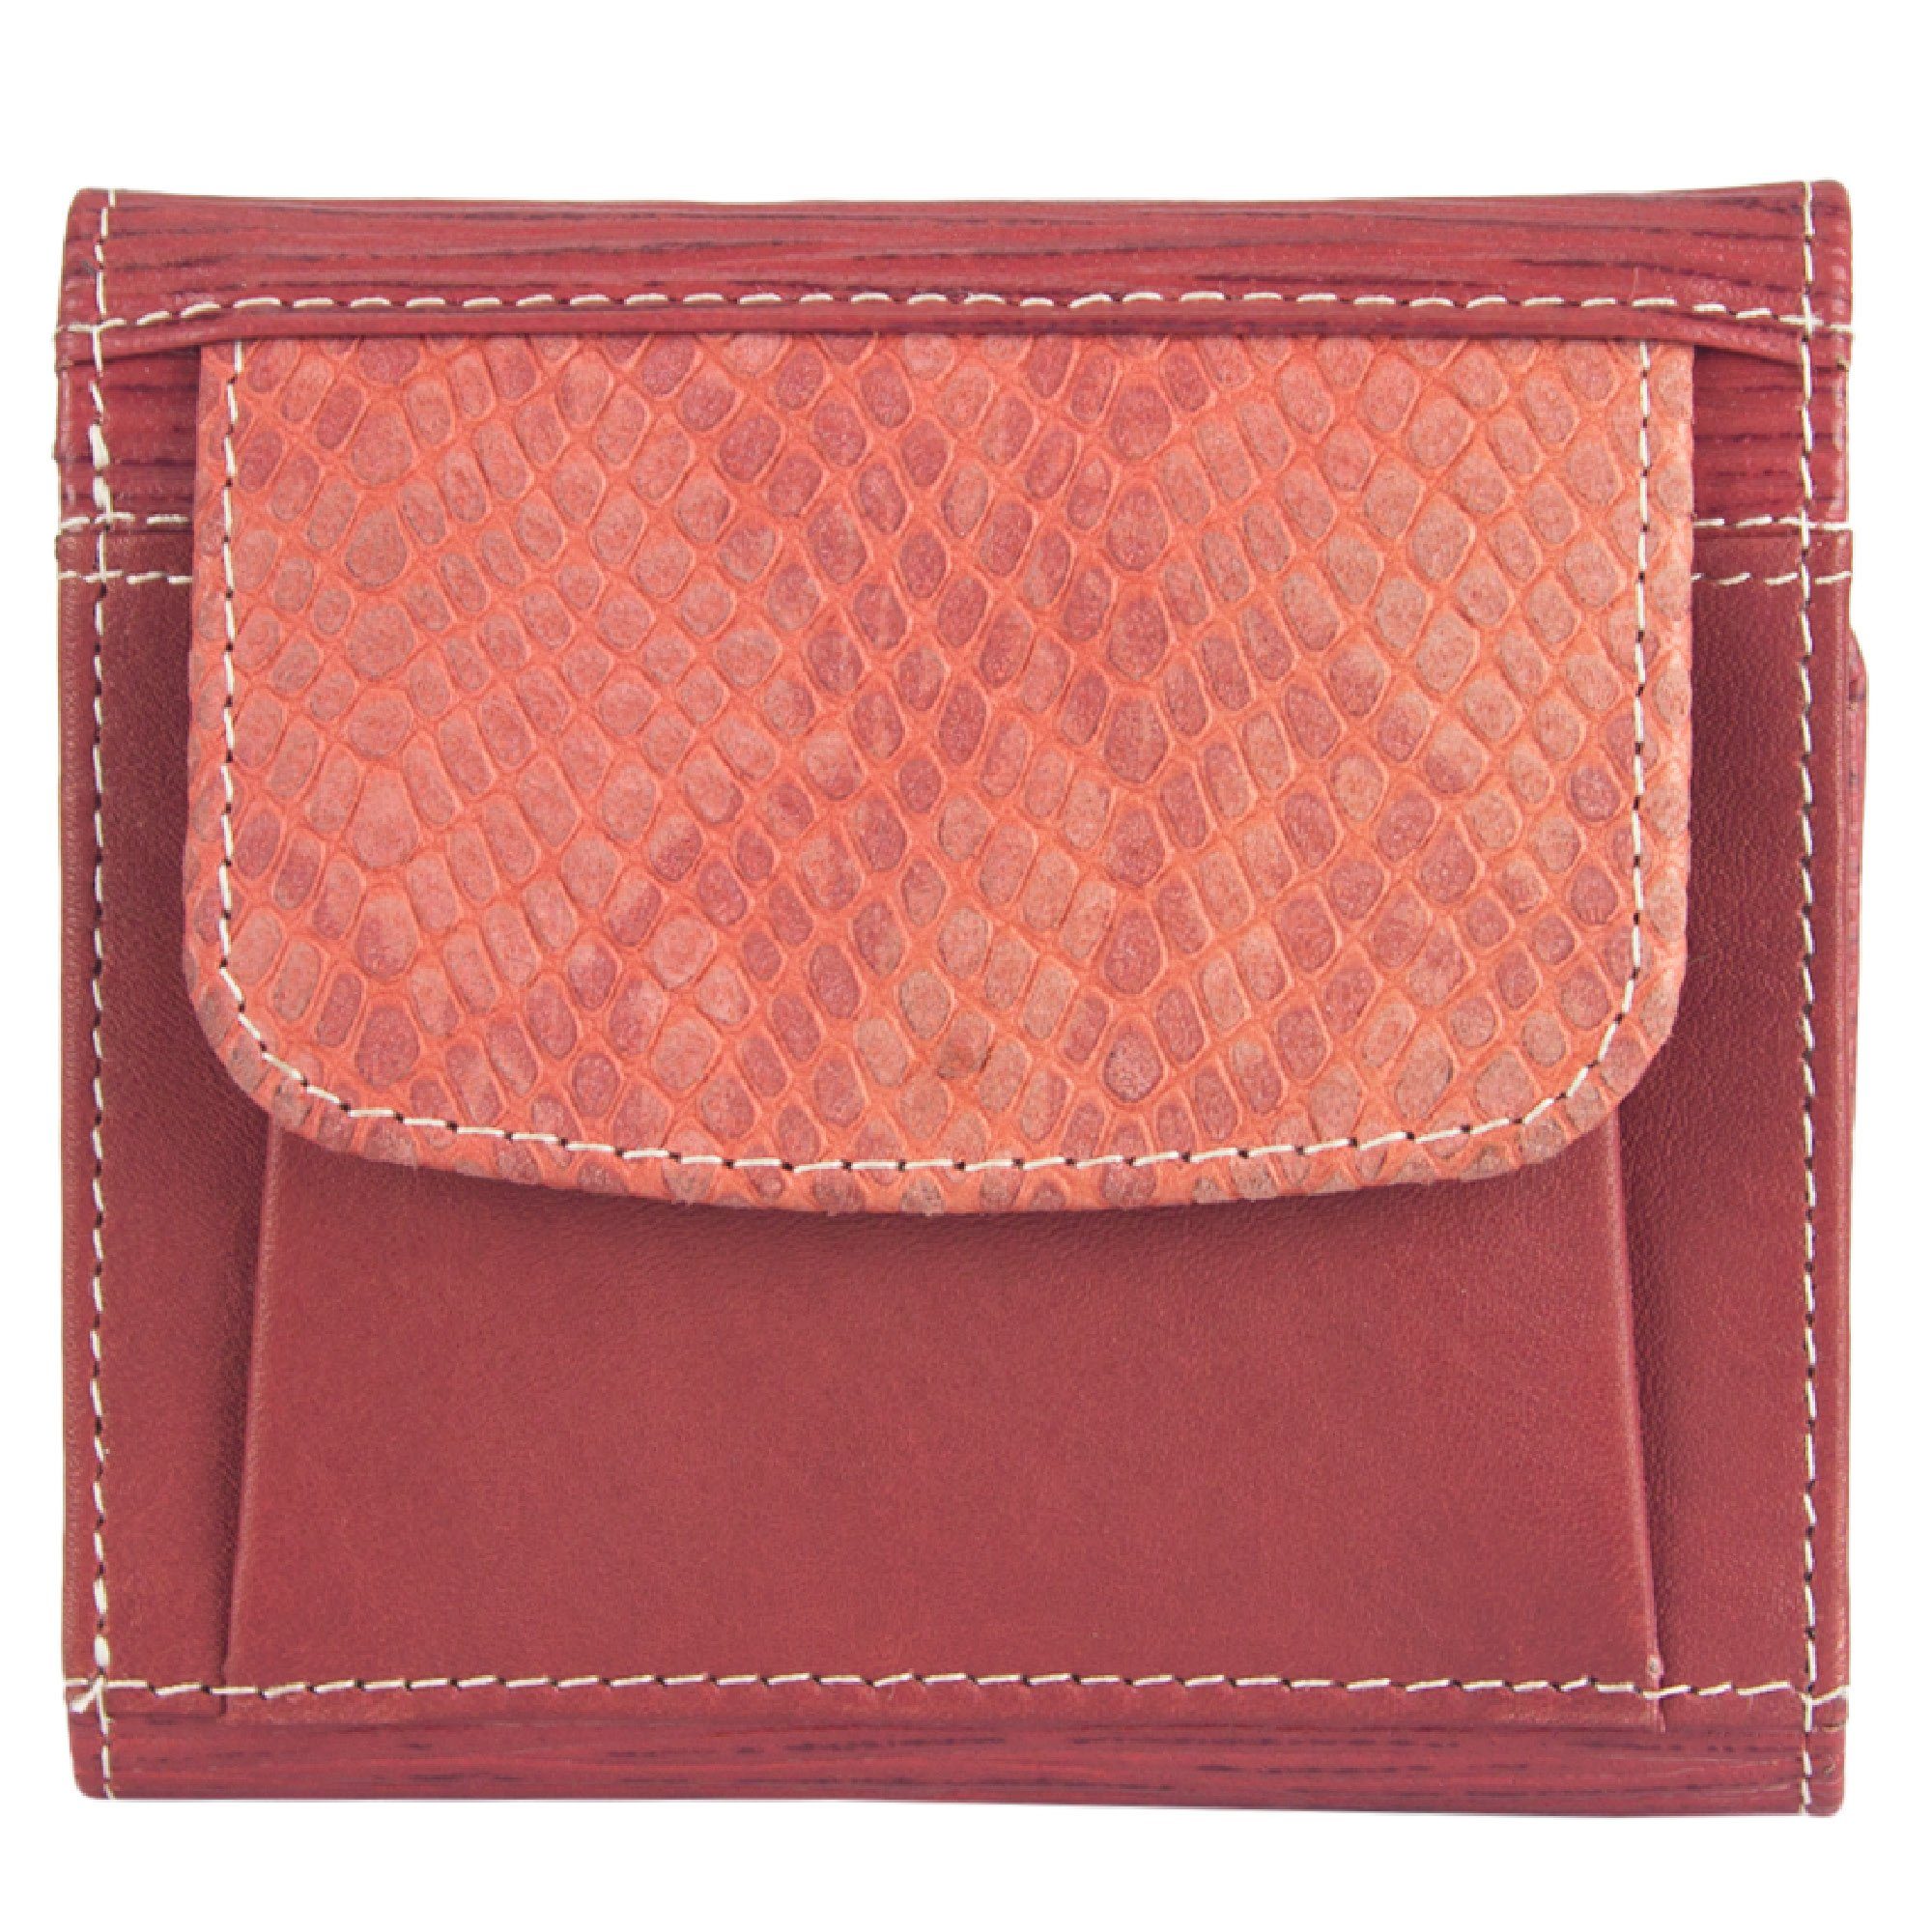 Sunsa Geldbörse echt Leder Geldbeutel Portemonnaie Brieftasche klein Damen, echt Leder, aus recycelten Lederresten, mit RFID-Schutz, Unisex orange /rot